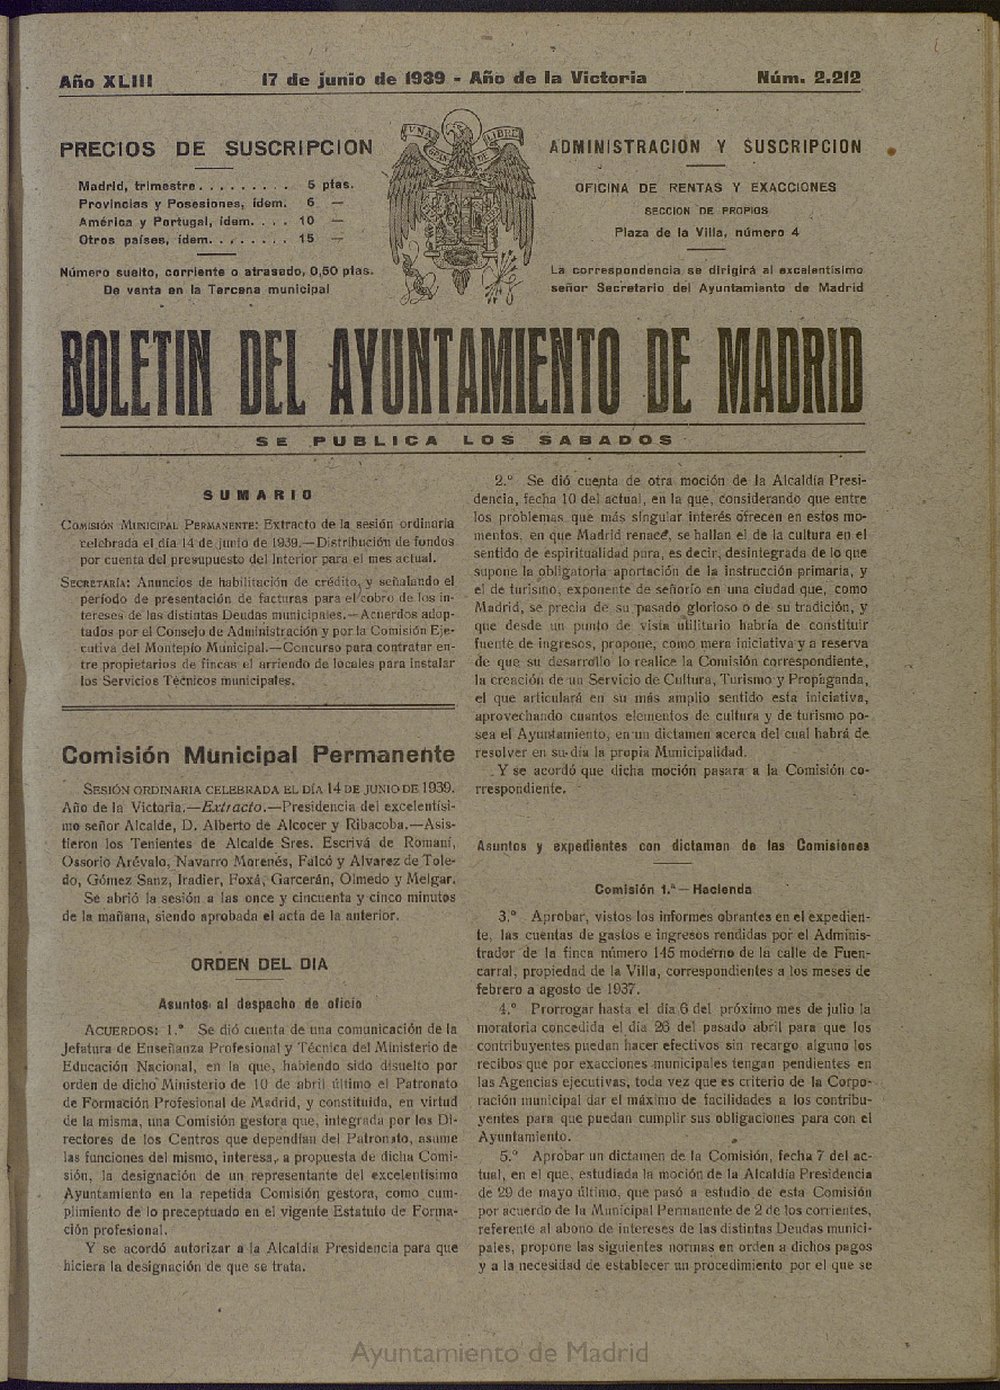 Boletín Oficial del Ayuntamiento de Madrid del 17 de junio de 1939, nº 2212